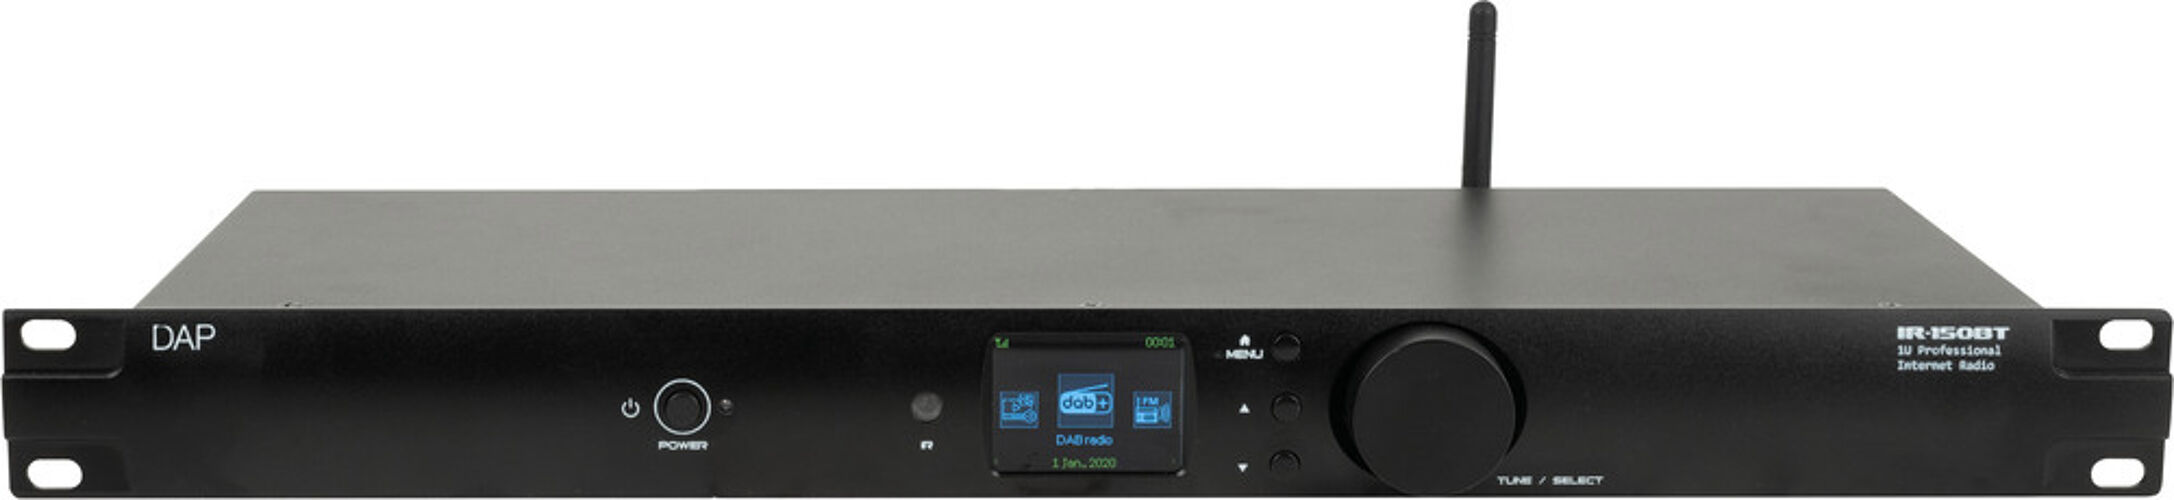 DAP-Audio IR-150BT Media Player ...